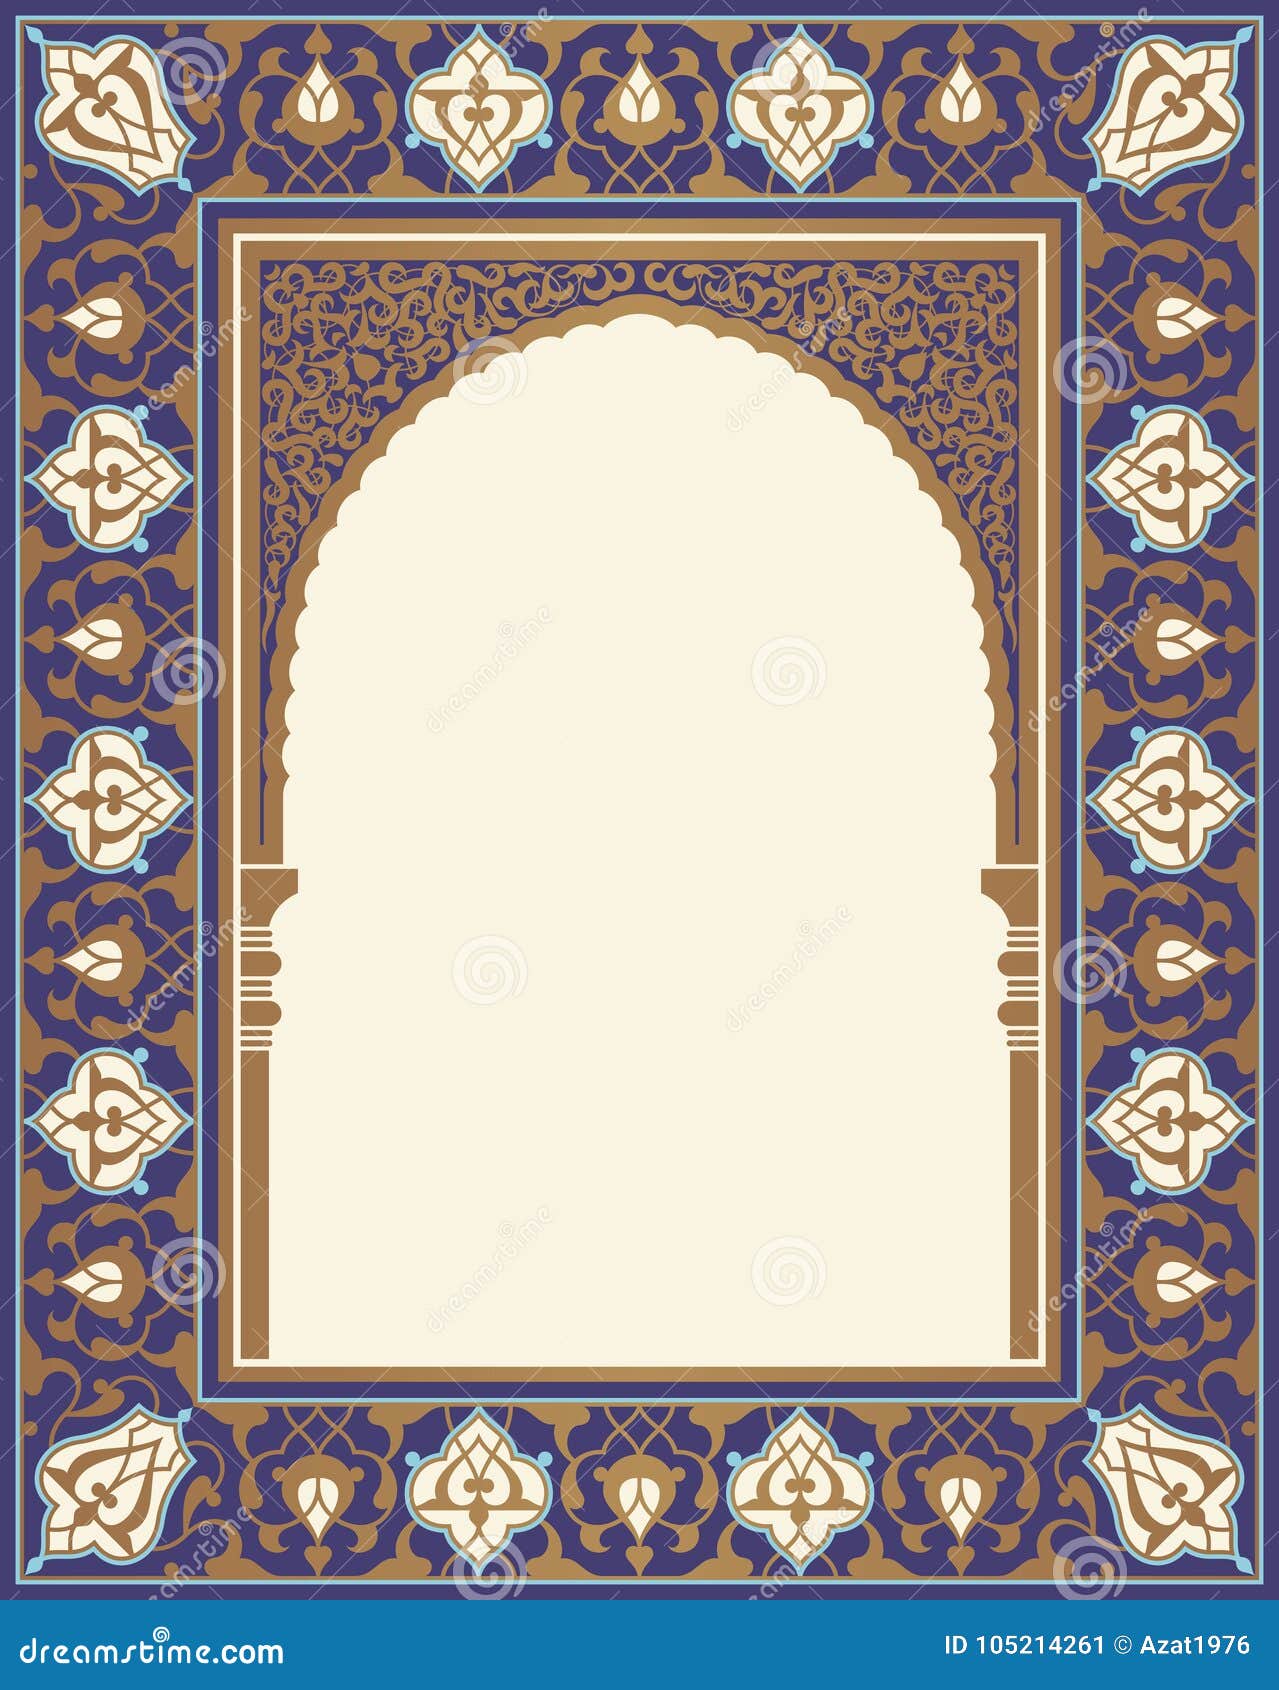 arabic floral arch.